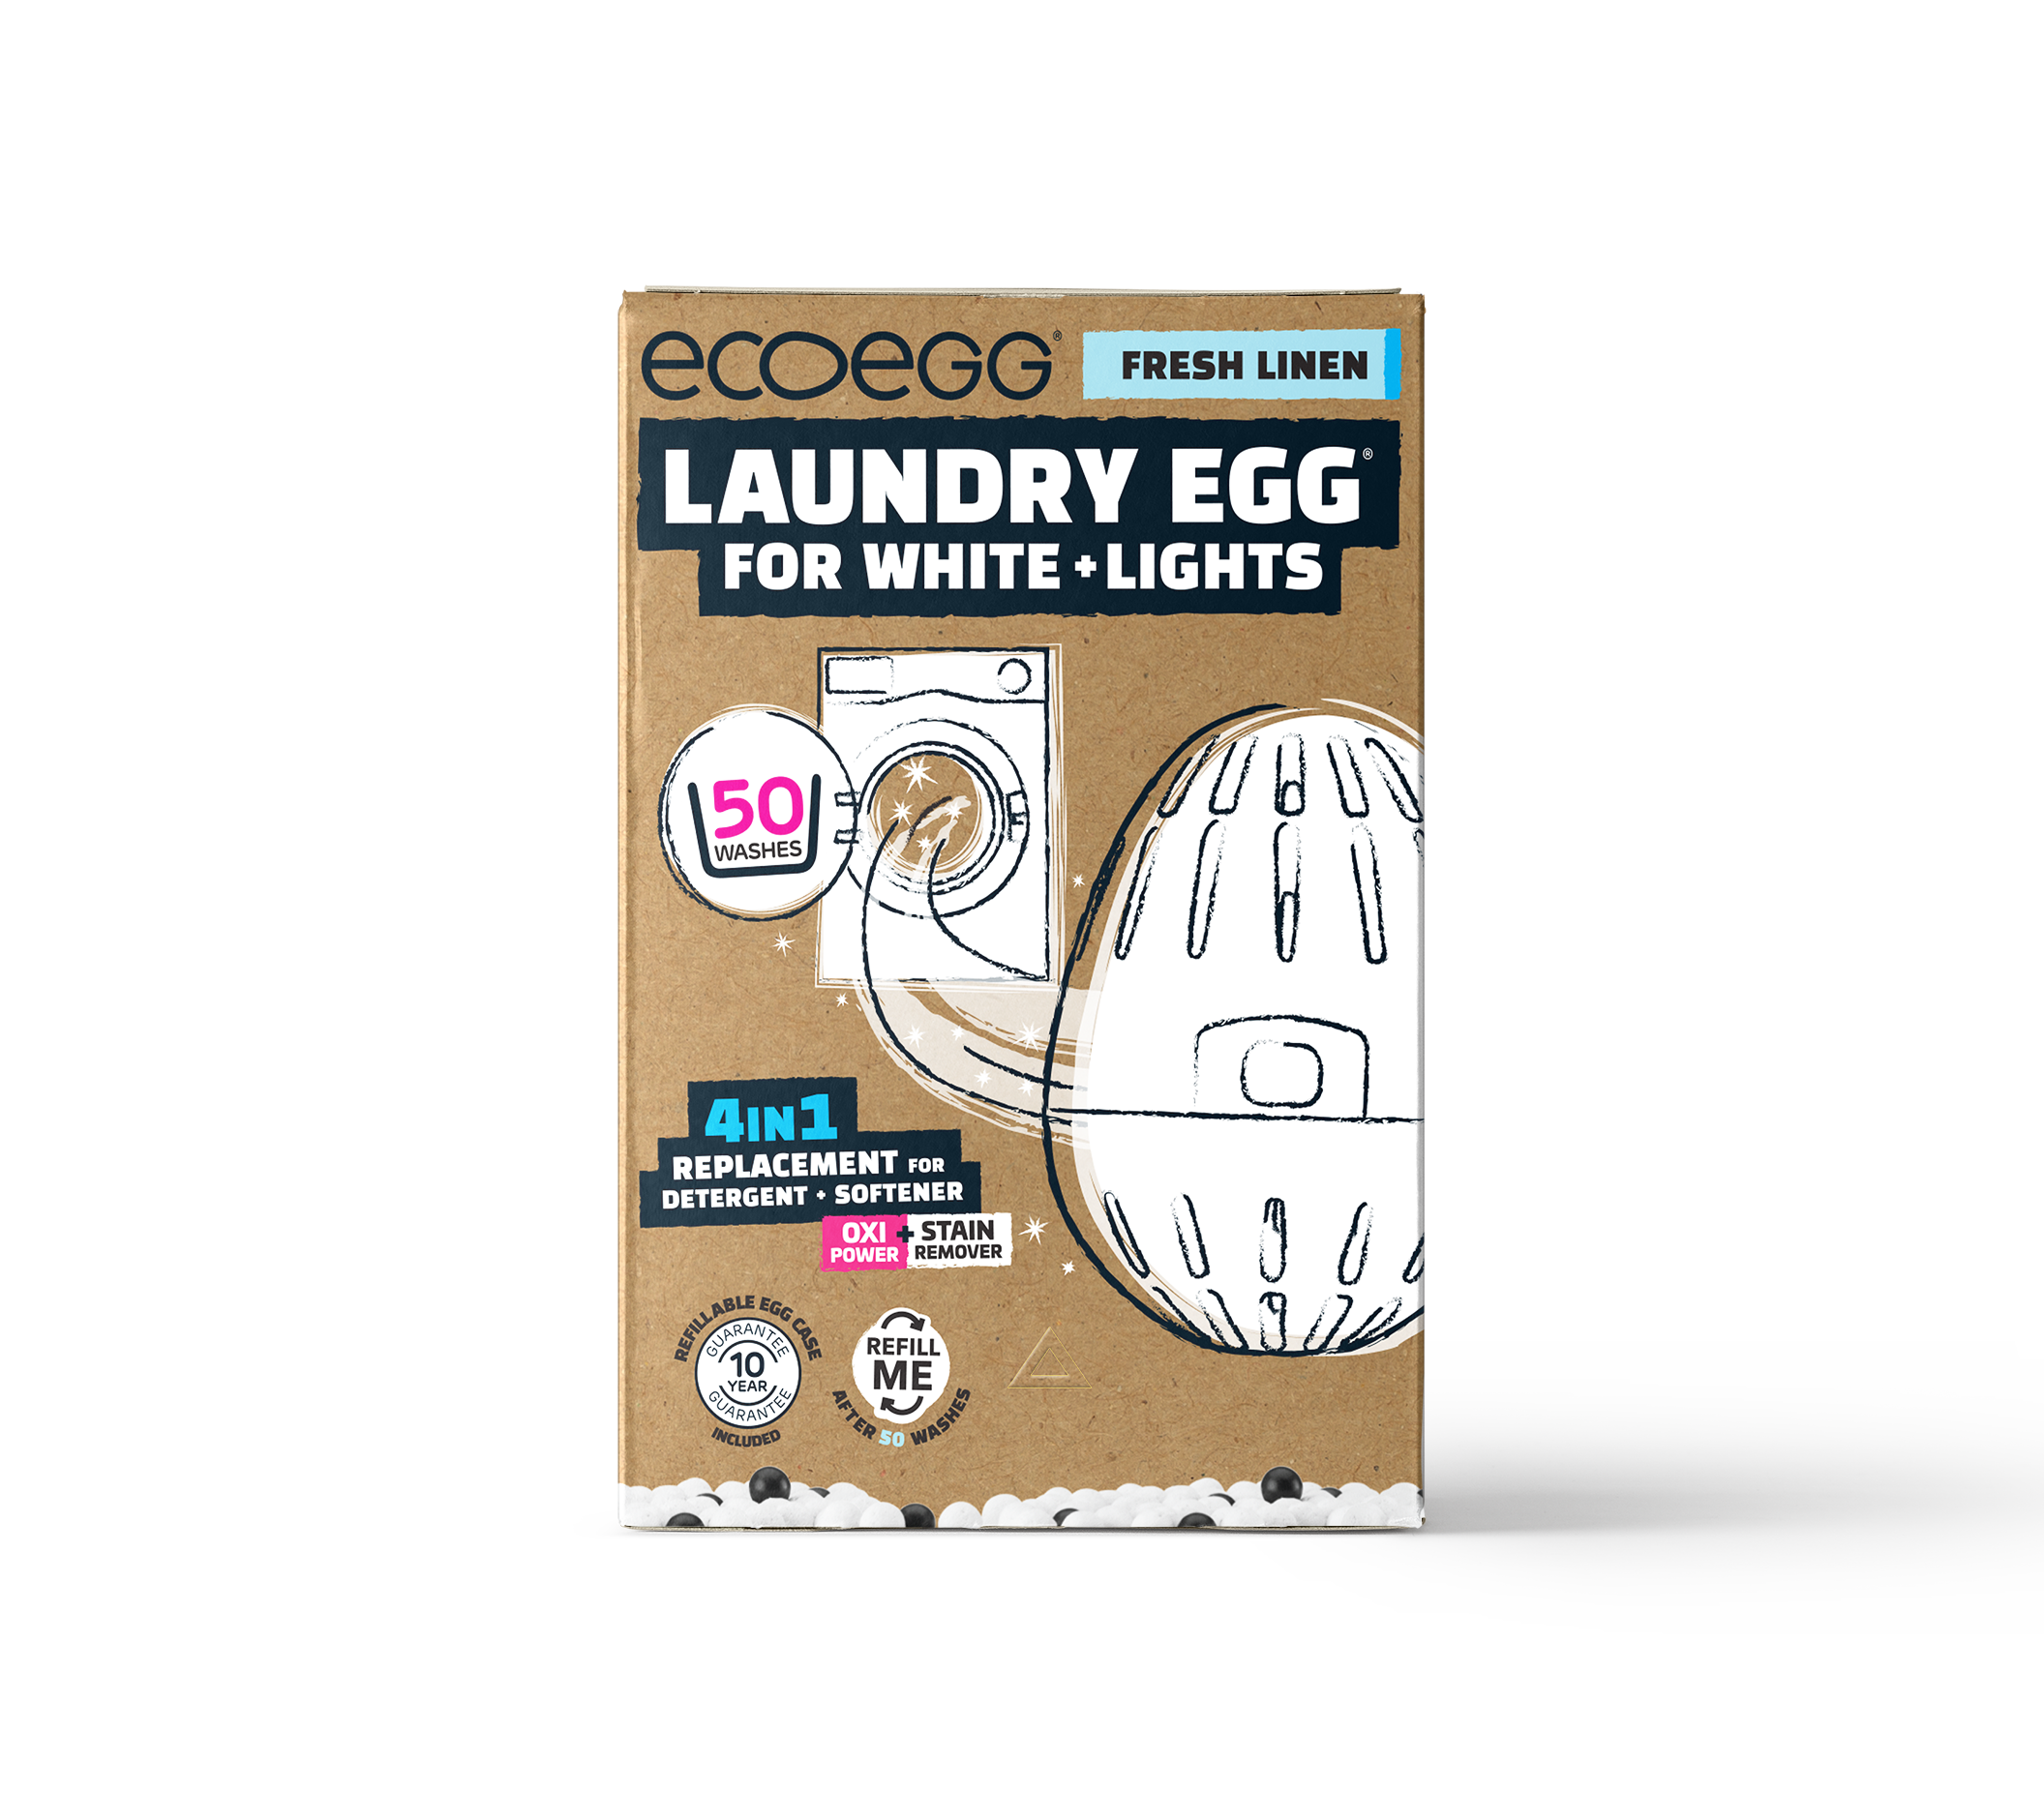 Laundry Egg for Whites + Lights - Fresh linen